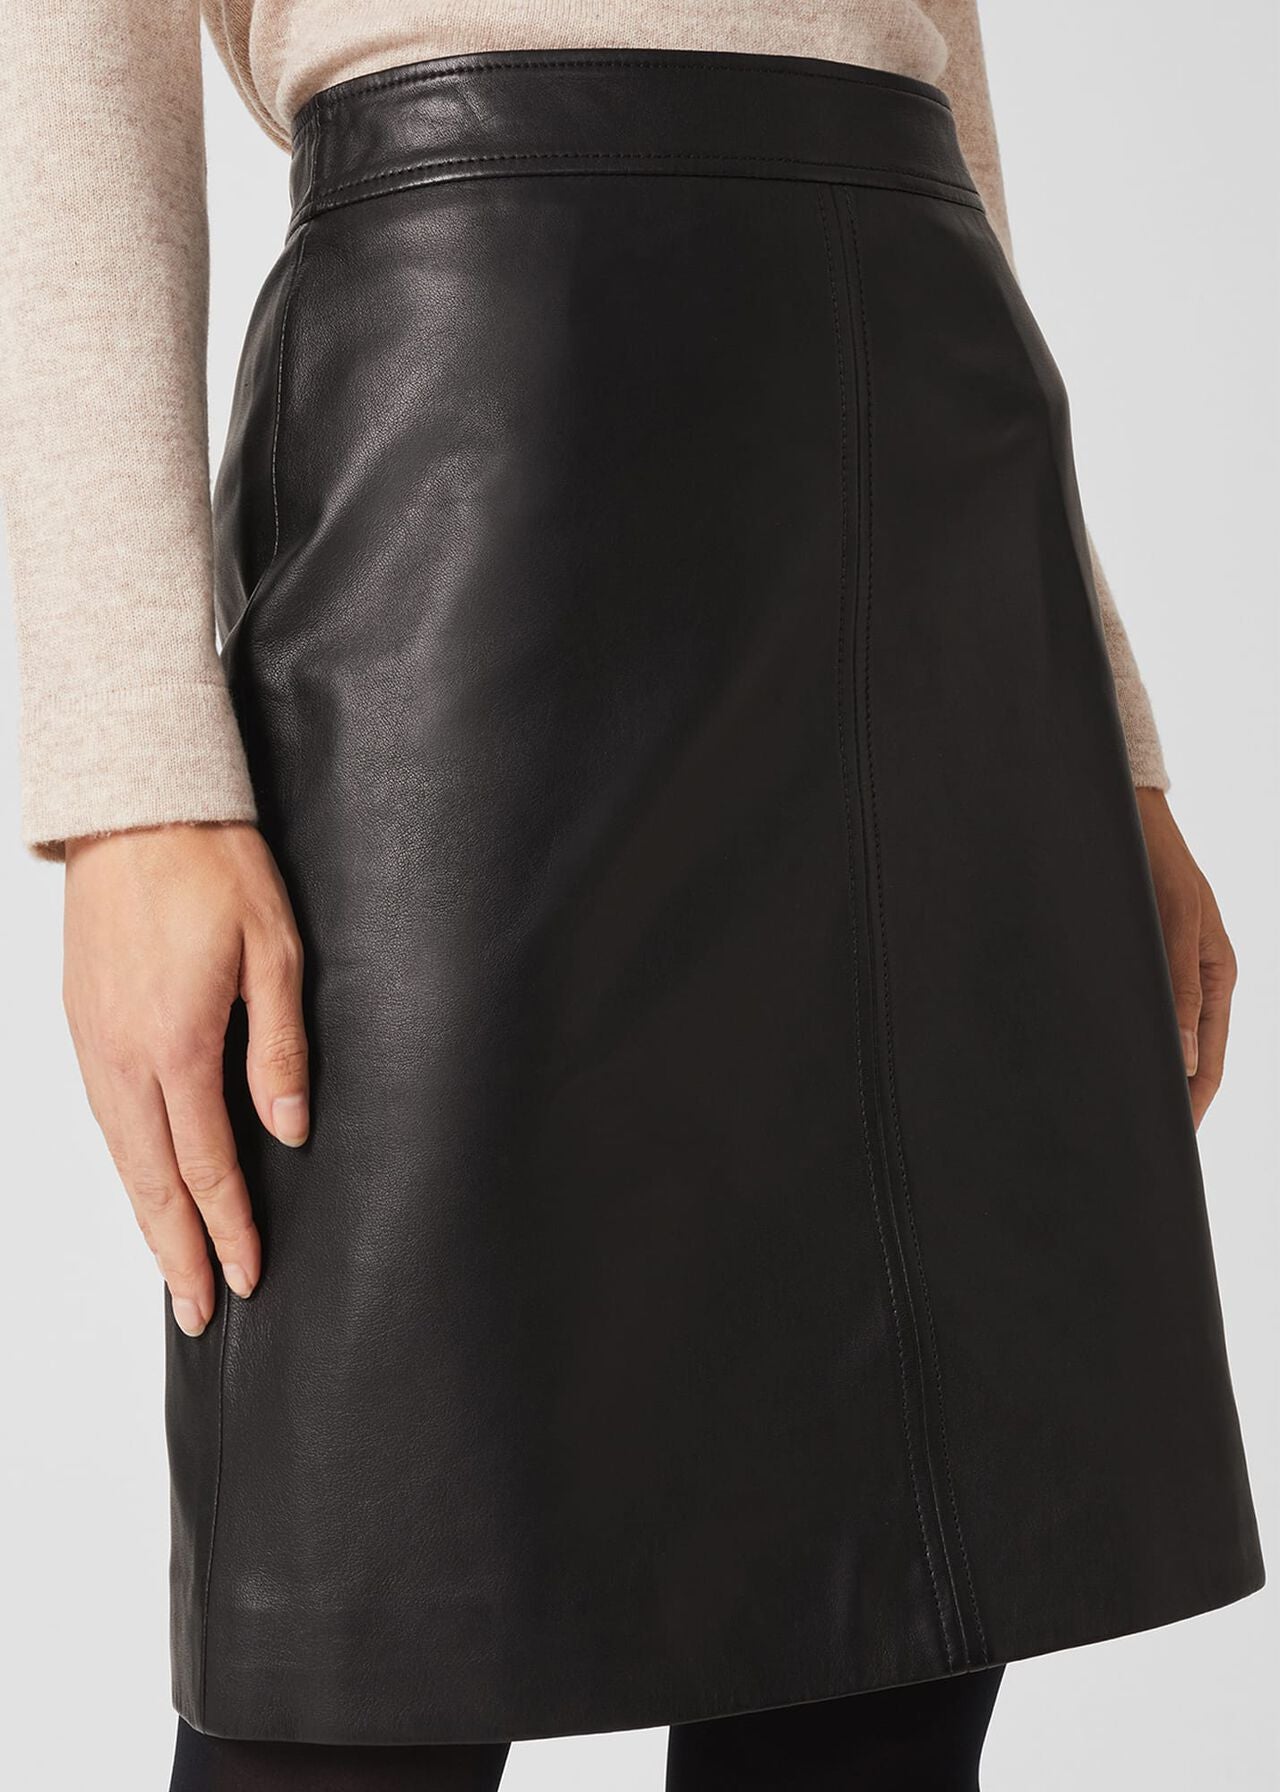 Annalise Skirt 0221/7126/3472l00 Black